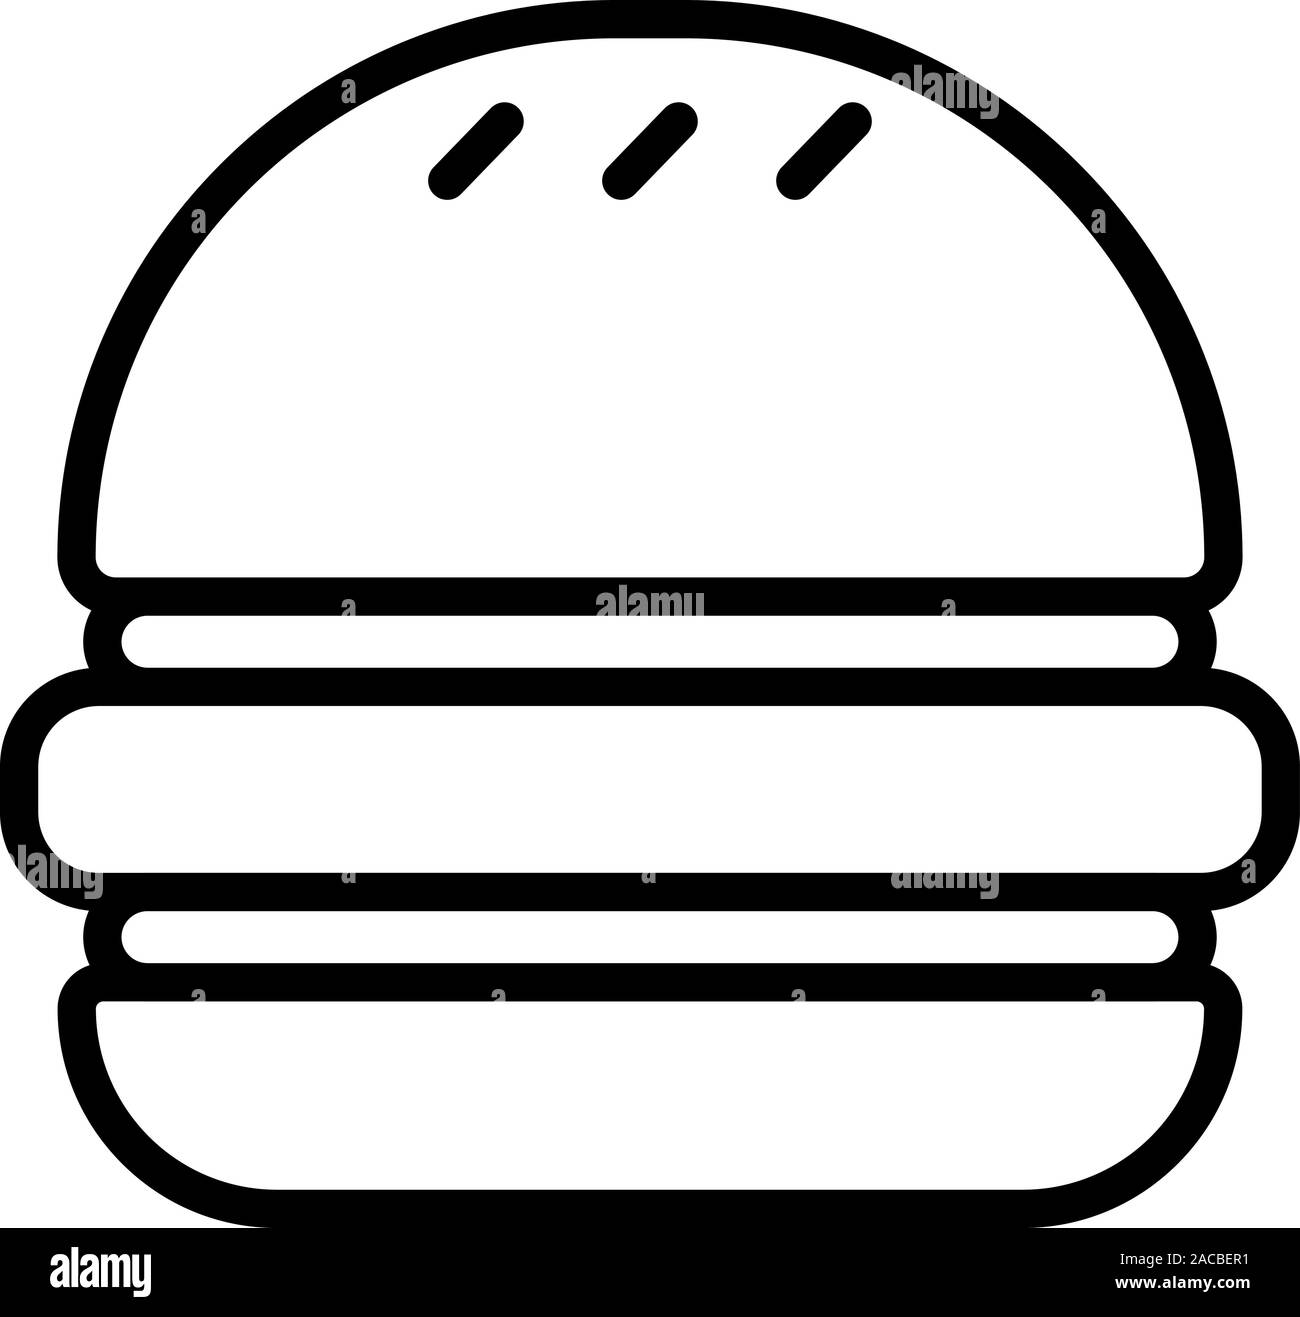 Symbole noir d'un hamburger, isolé sur fond blanc. Illustration de Vecteur